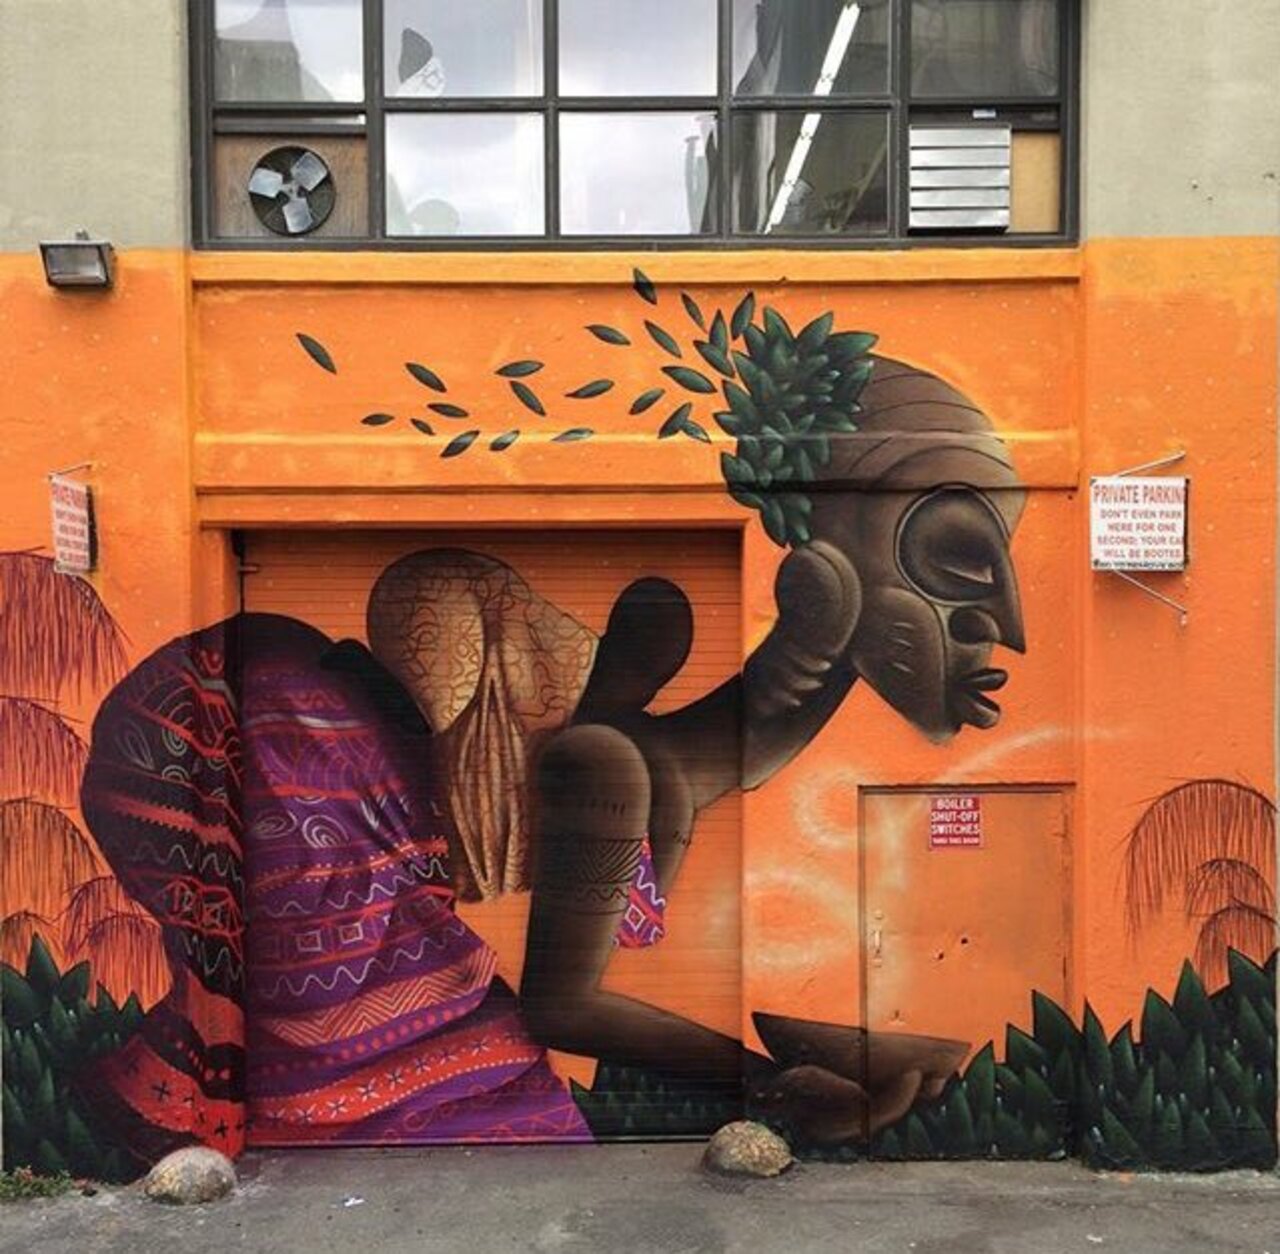 RT @KNxLSDefender: New Street Art by Alexandre Keto in NYC 

#art #graffiti #mural #streetart https://t.co/wEpkTM5nMM